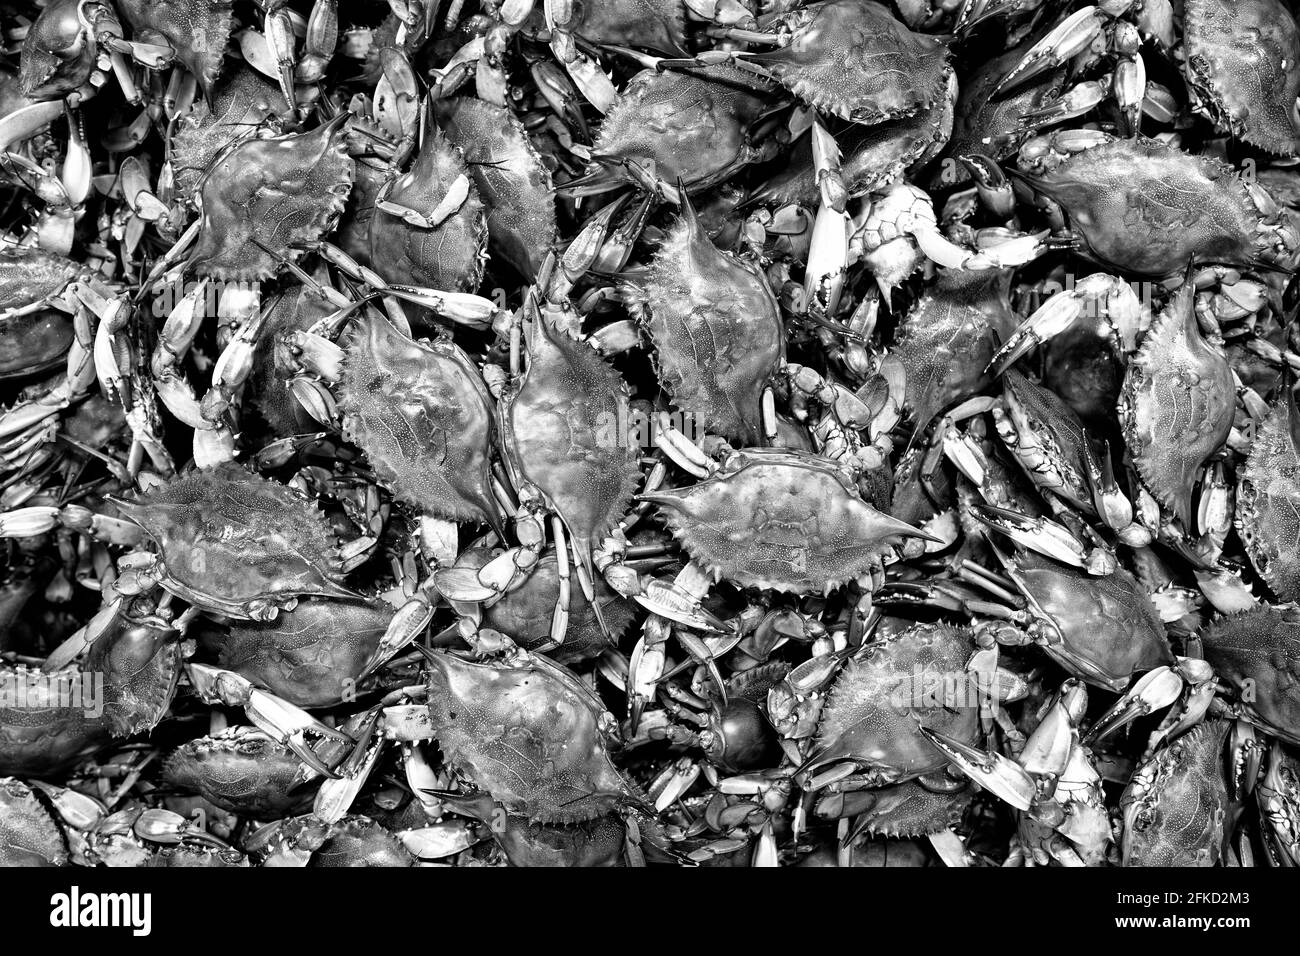 Chesapeake Bay, MD - Blue Crabs (Callinectes sapidus) sind eine lokale Spezialität und Delikatesse der mittelatlantischen Region der Vereinigten Staaten, insbesondere der Chesapeake Bay Area. Stockfoto